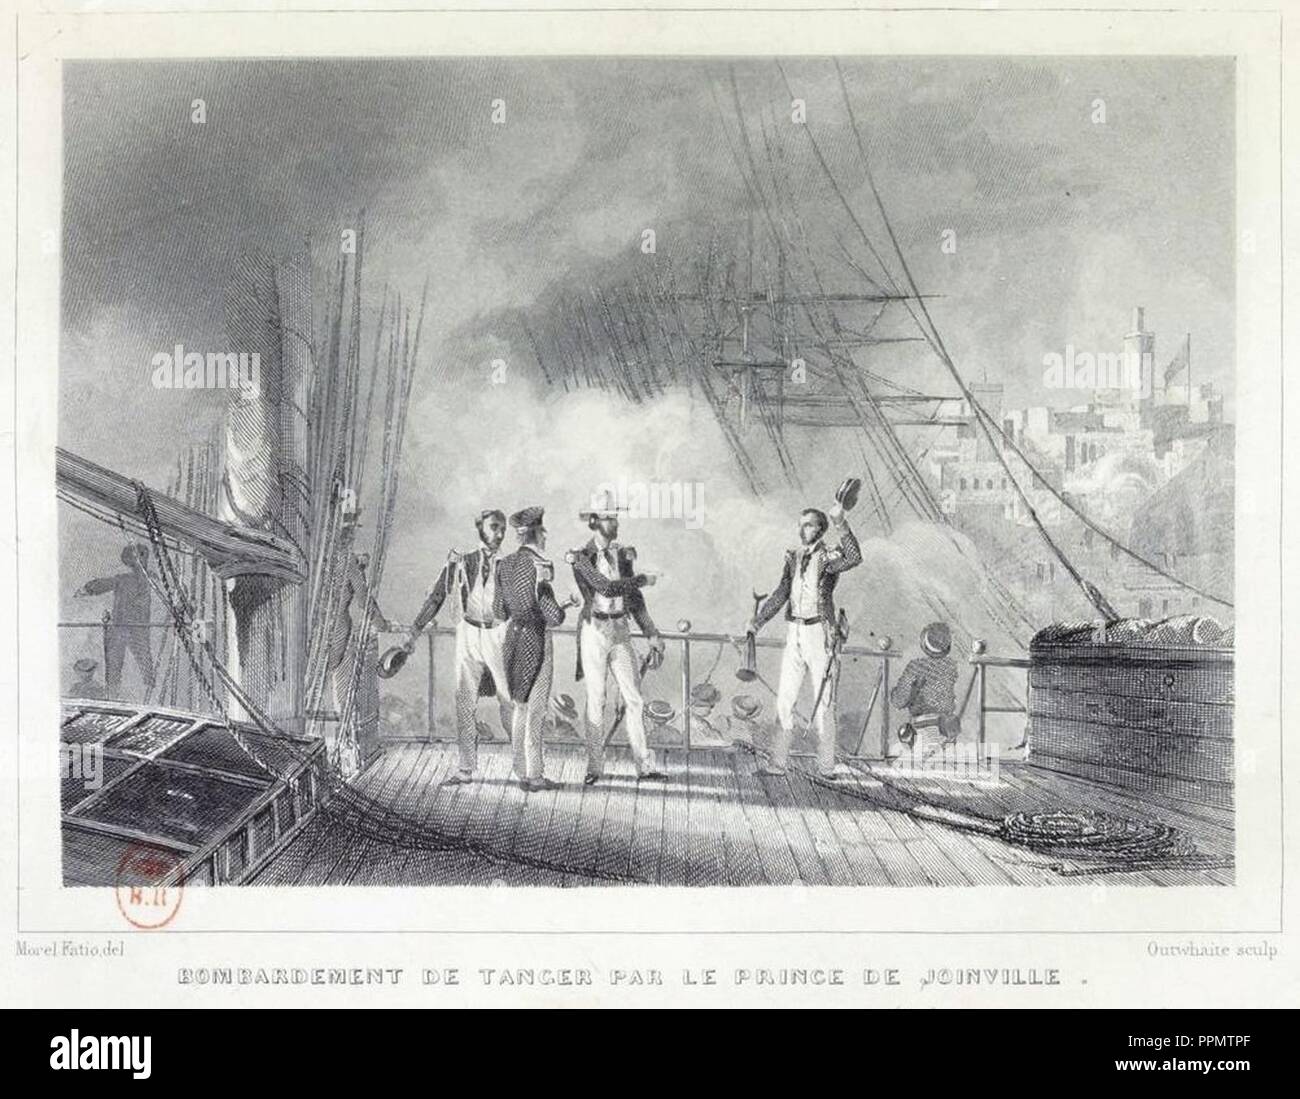 Bombardement de Tanger par le prince de Joinville en 1844. Stock Photo